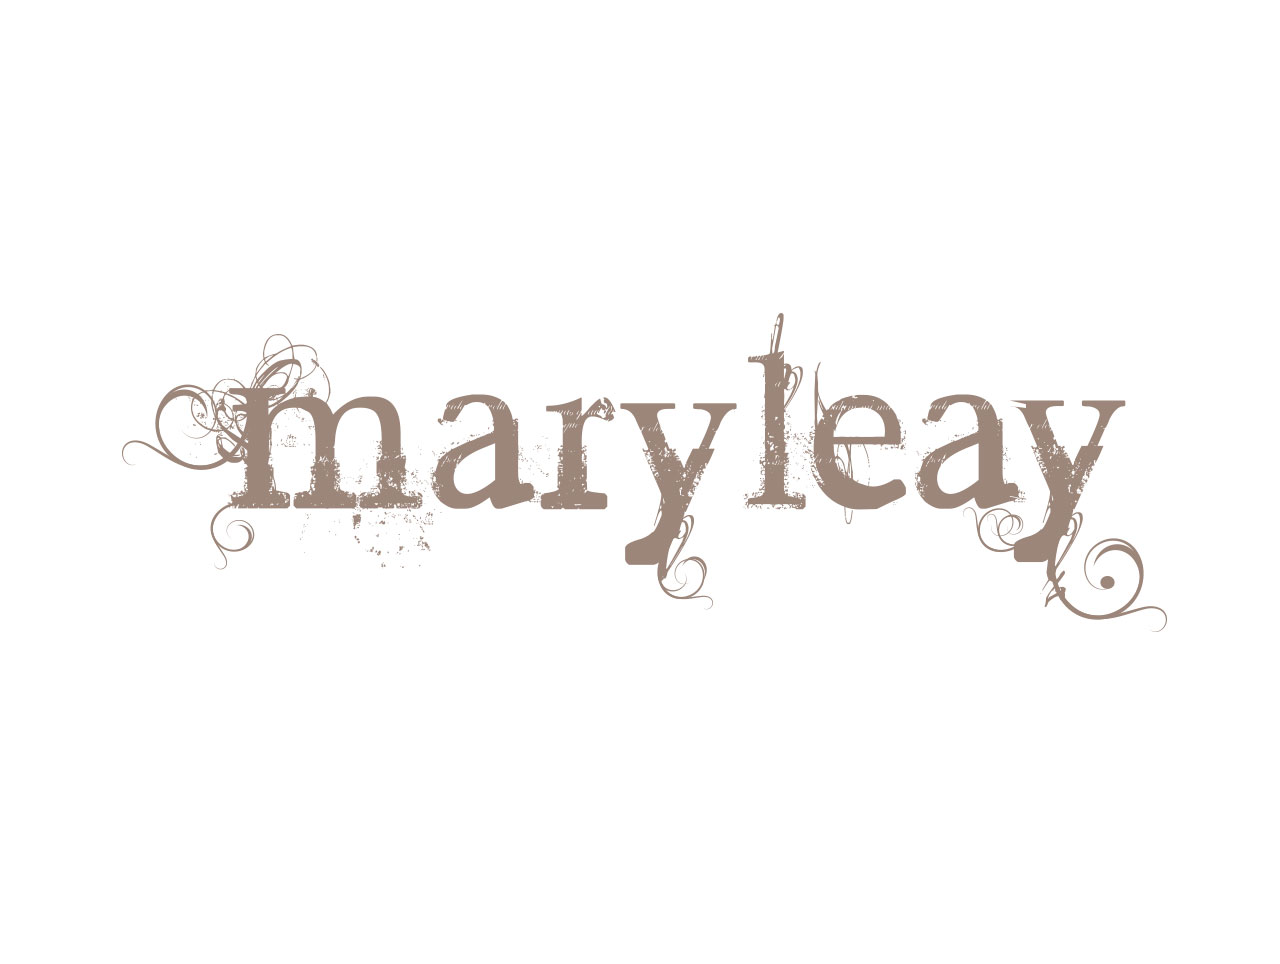 Mary Leay singer songwriter logo design